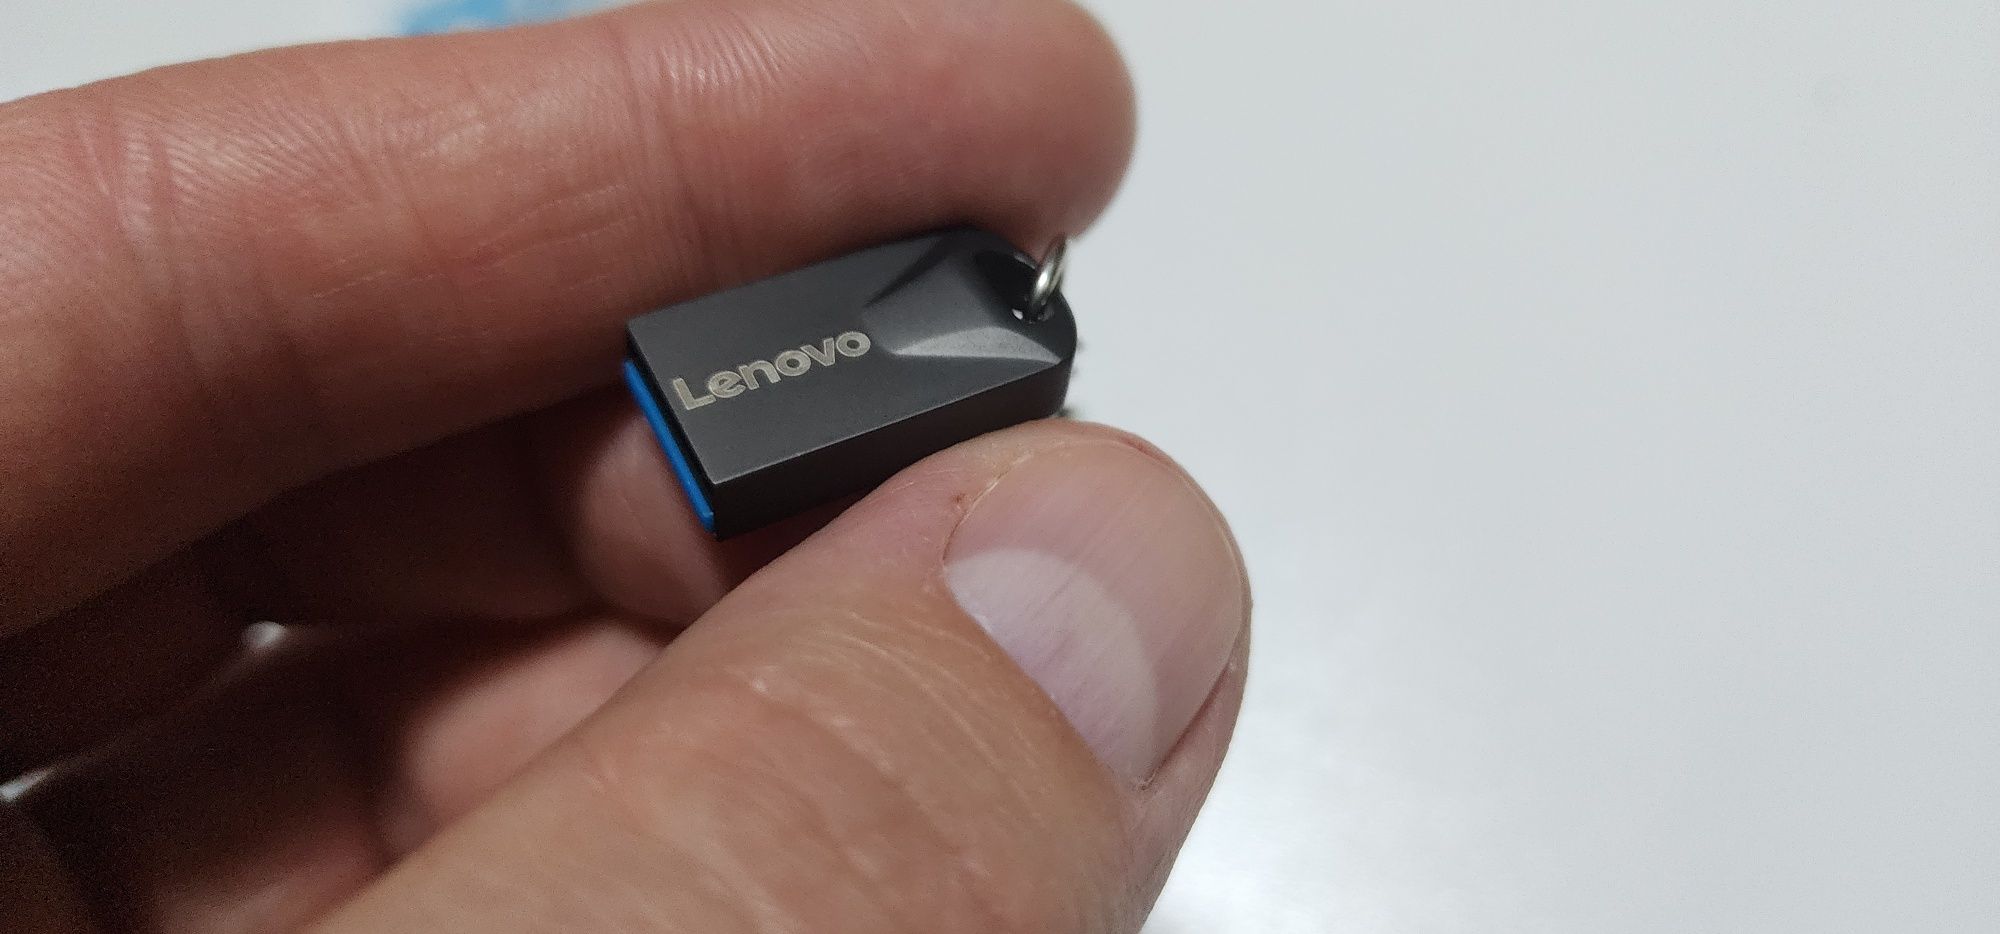 Флешка  Lenovo на 2 Тб.    USB flash drive 2 Tb

Є дві штуки на 1 і 2